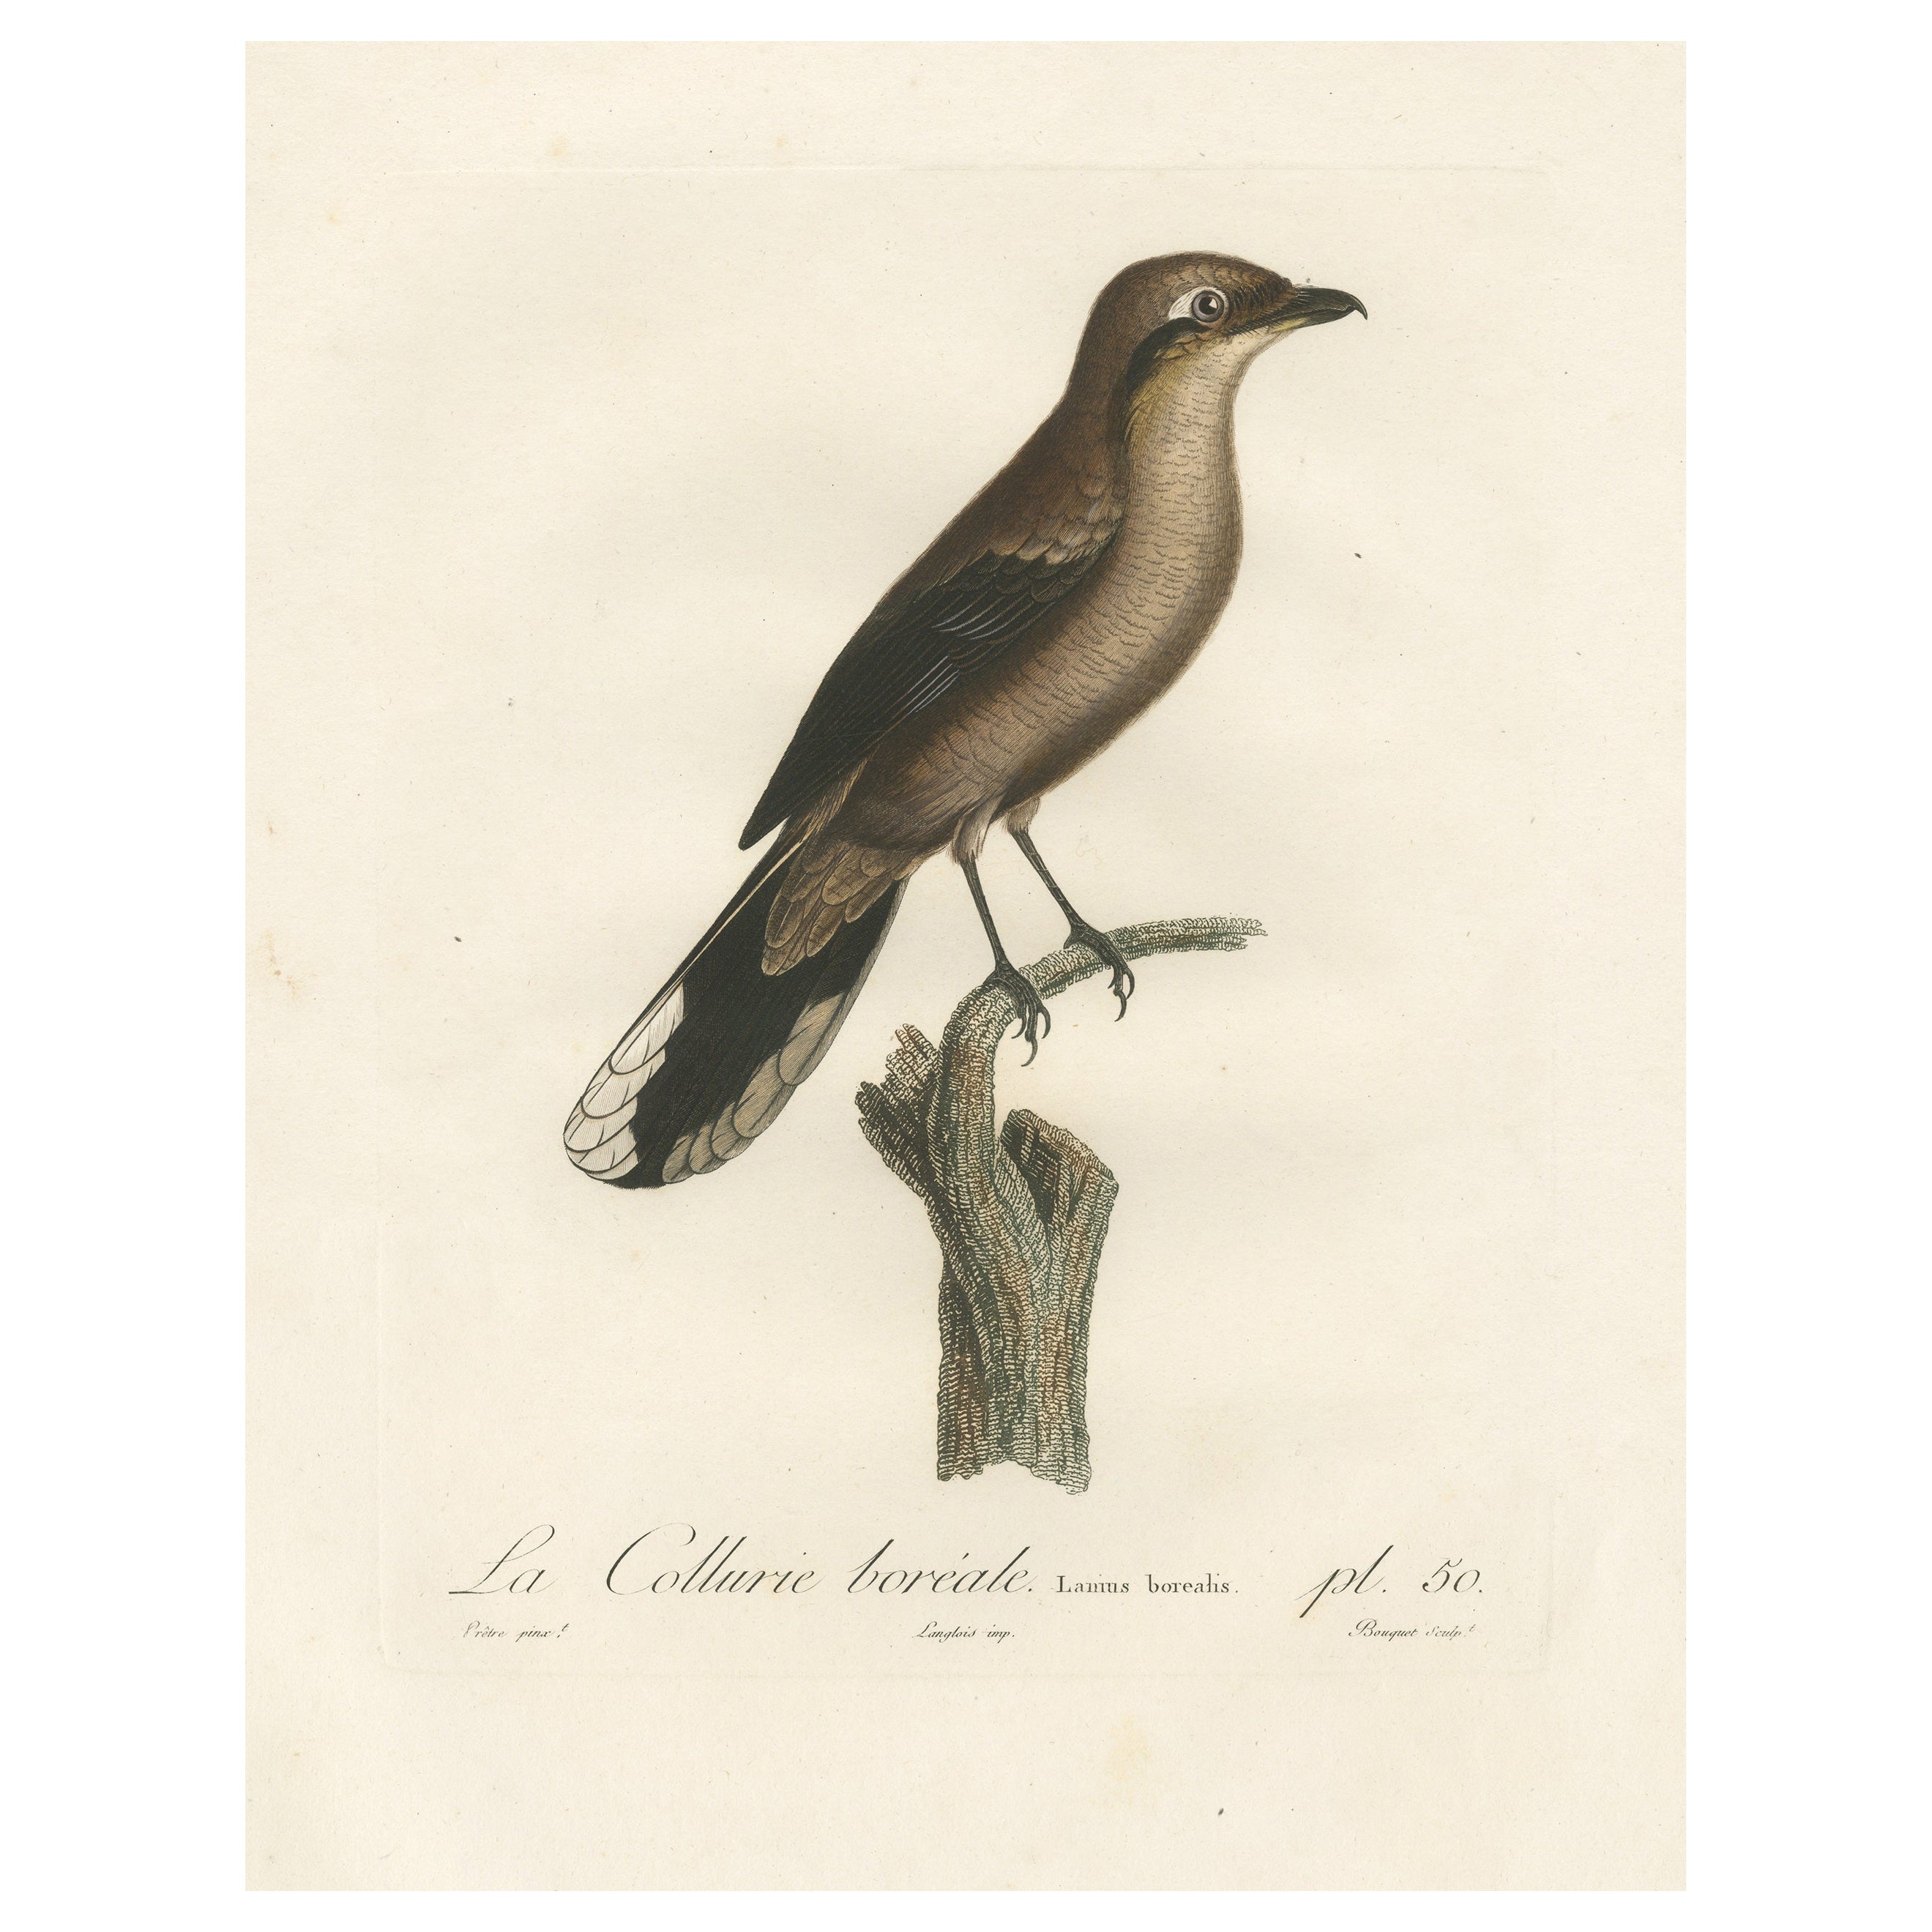 Große handbearbeitete ornithologische Studie eines nördlichen Schreins aus dem Jahr 1807